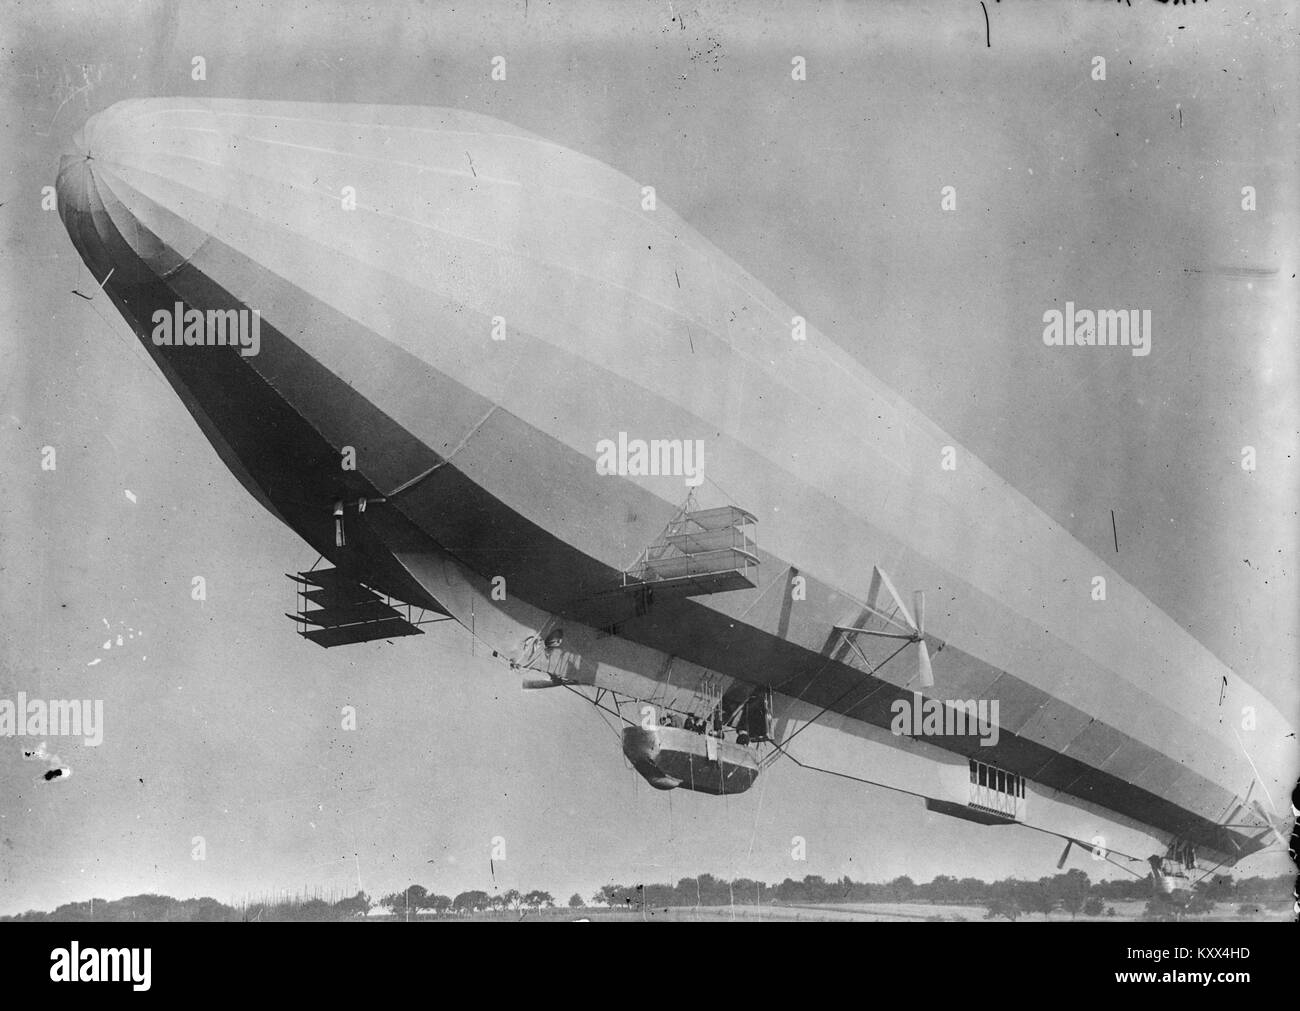 Zeppelin Passenger ship Stock Photo